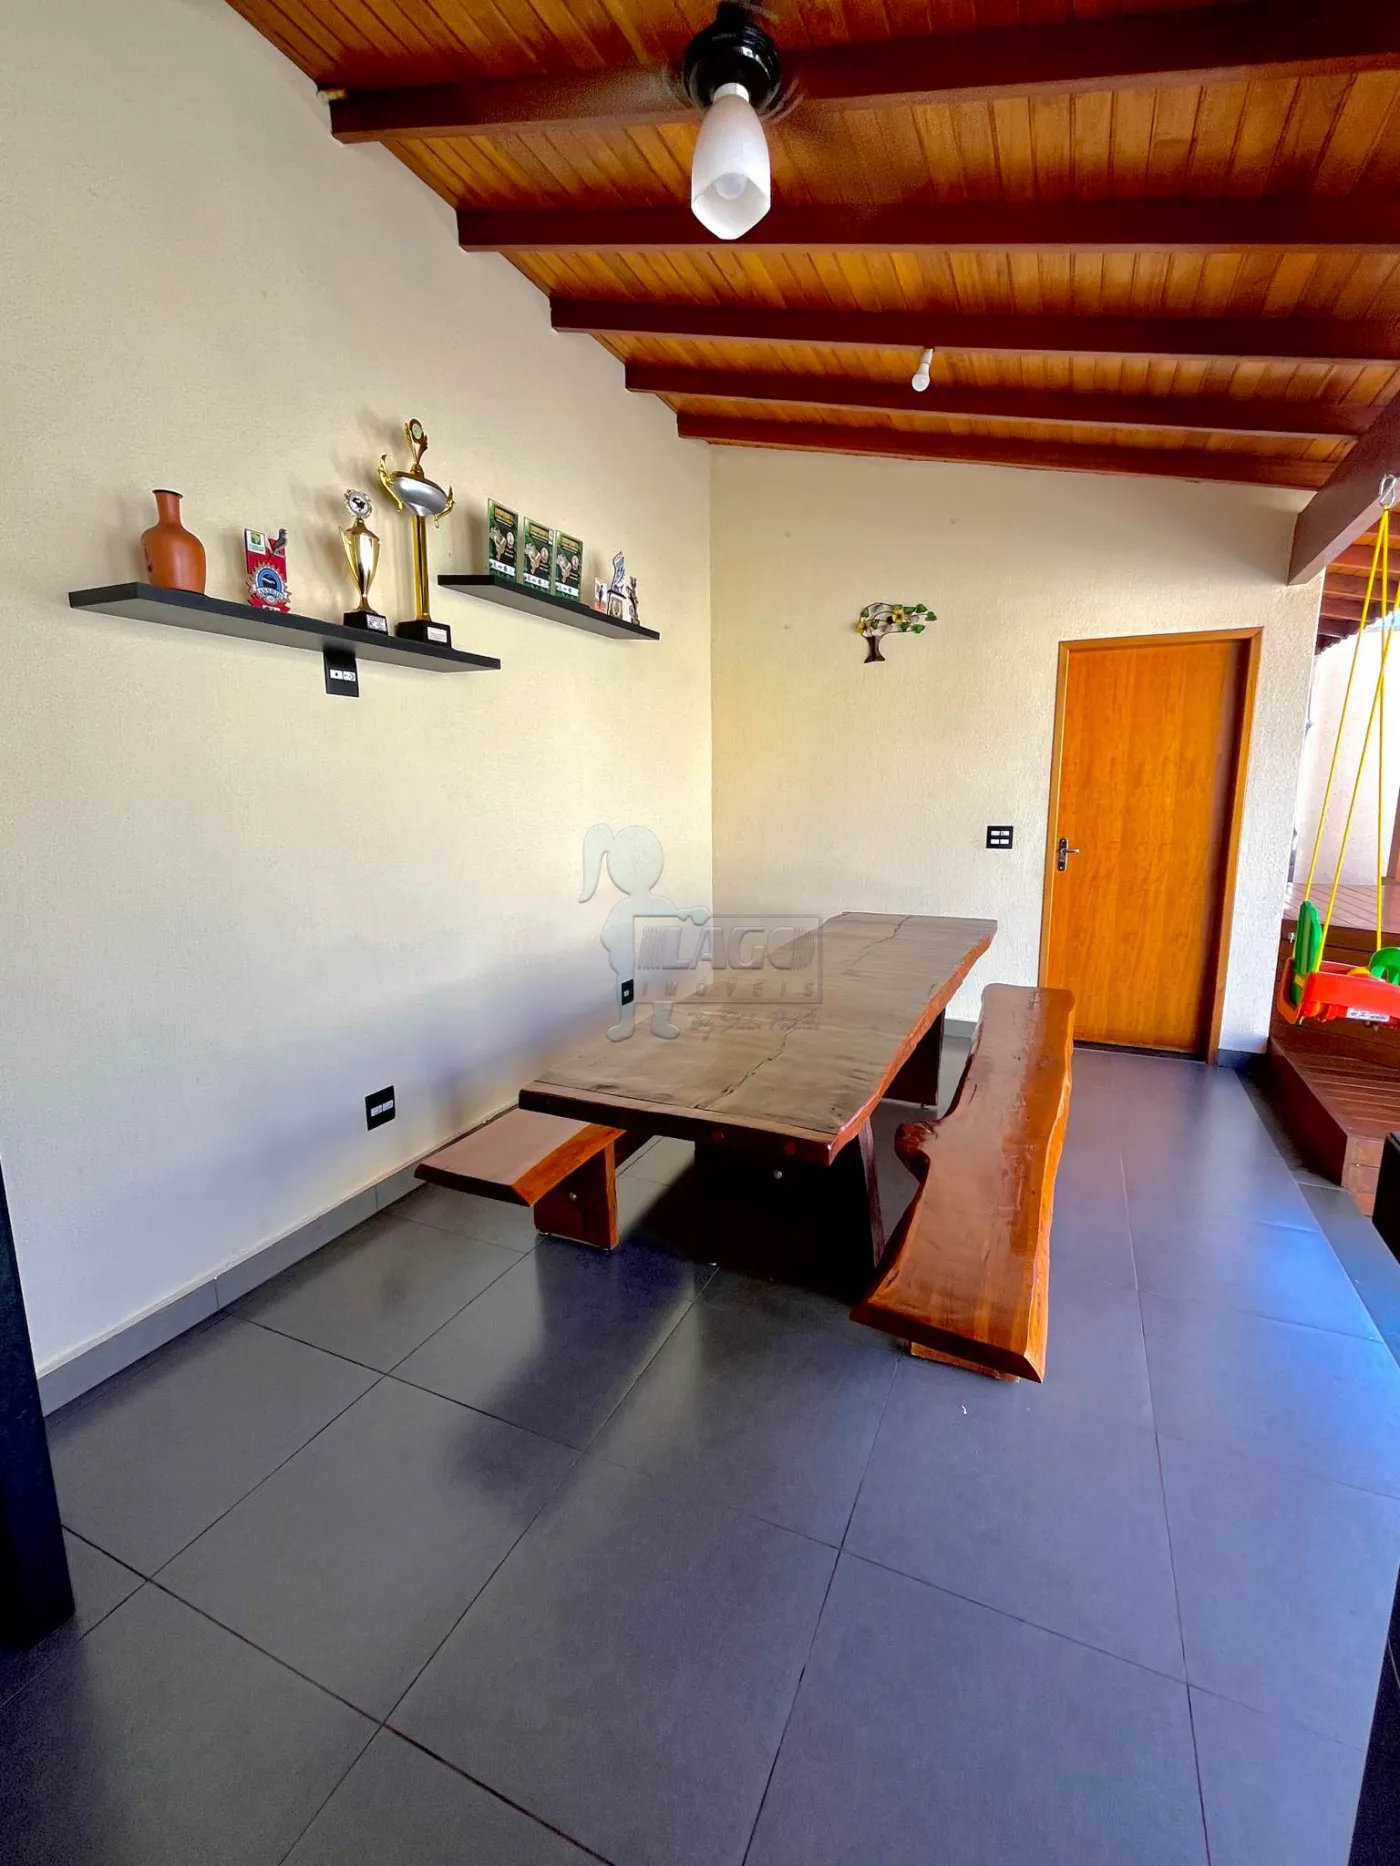 Comprar Casa condomínio / Padrão em Ribeirão Preto R$ 490.000,00 - Foto 4